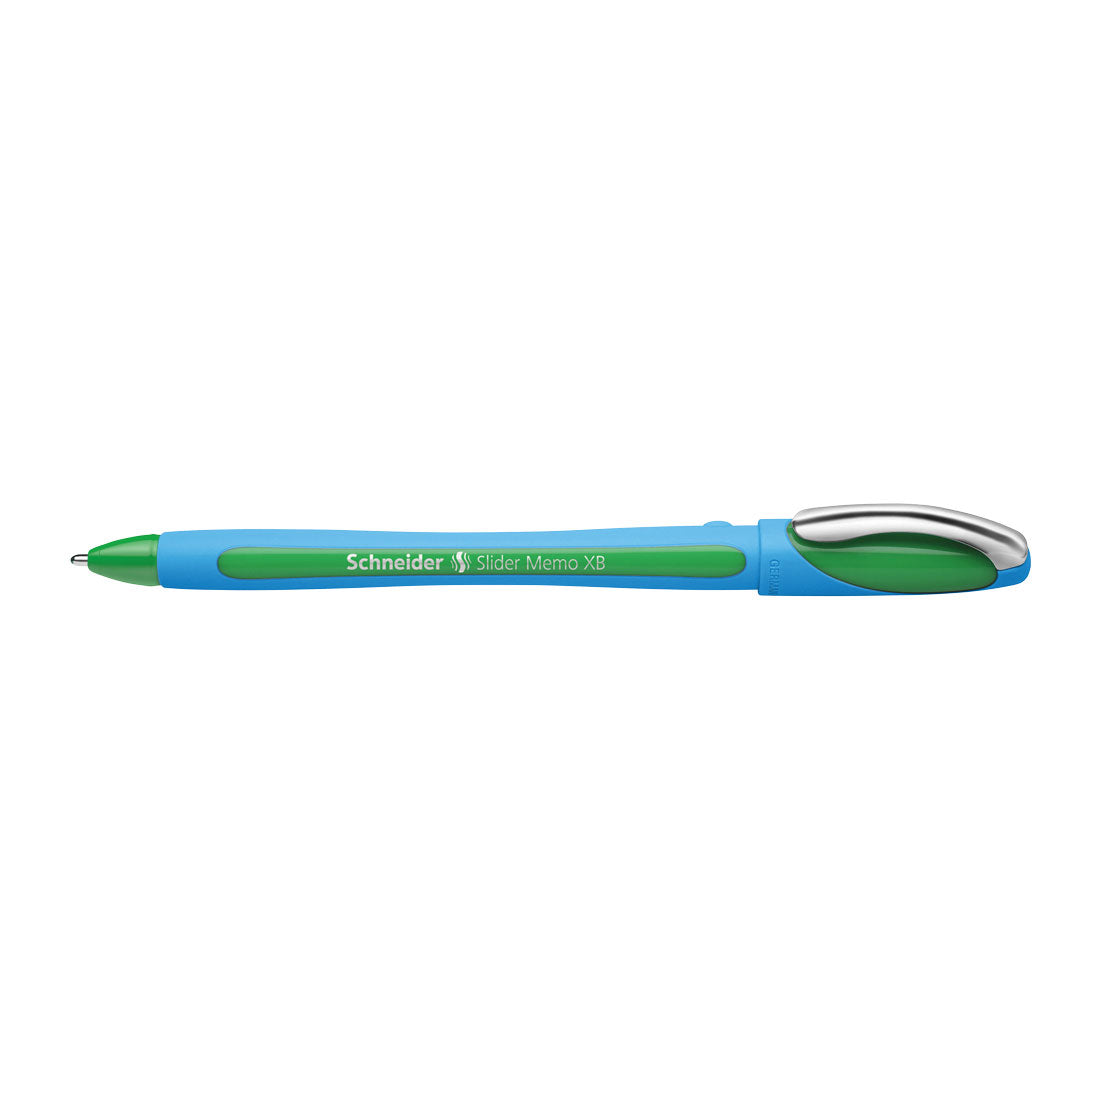 Memo Ballpoint Pens XB, Box of 10#colour_green